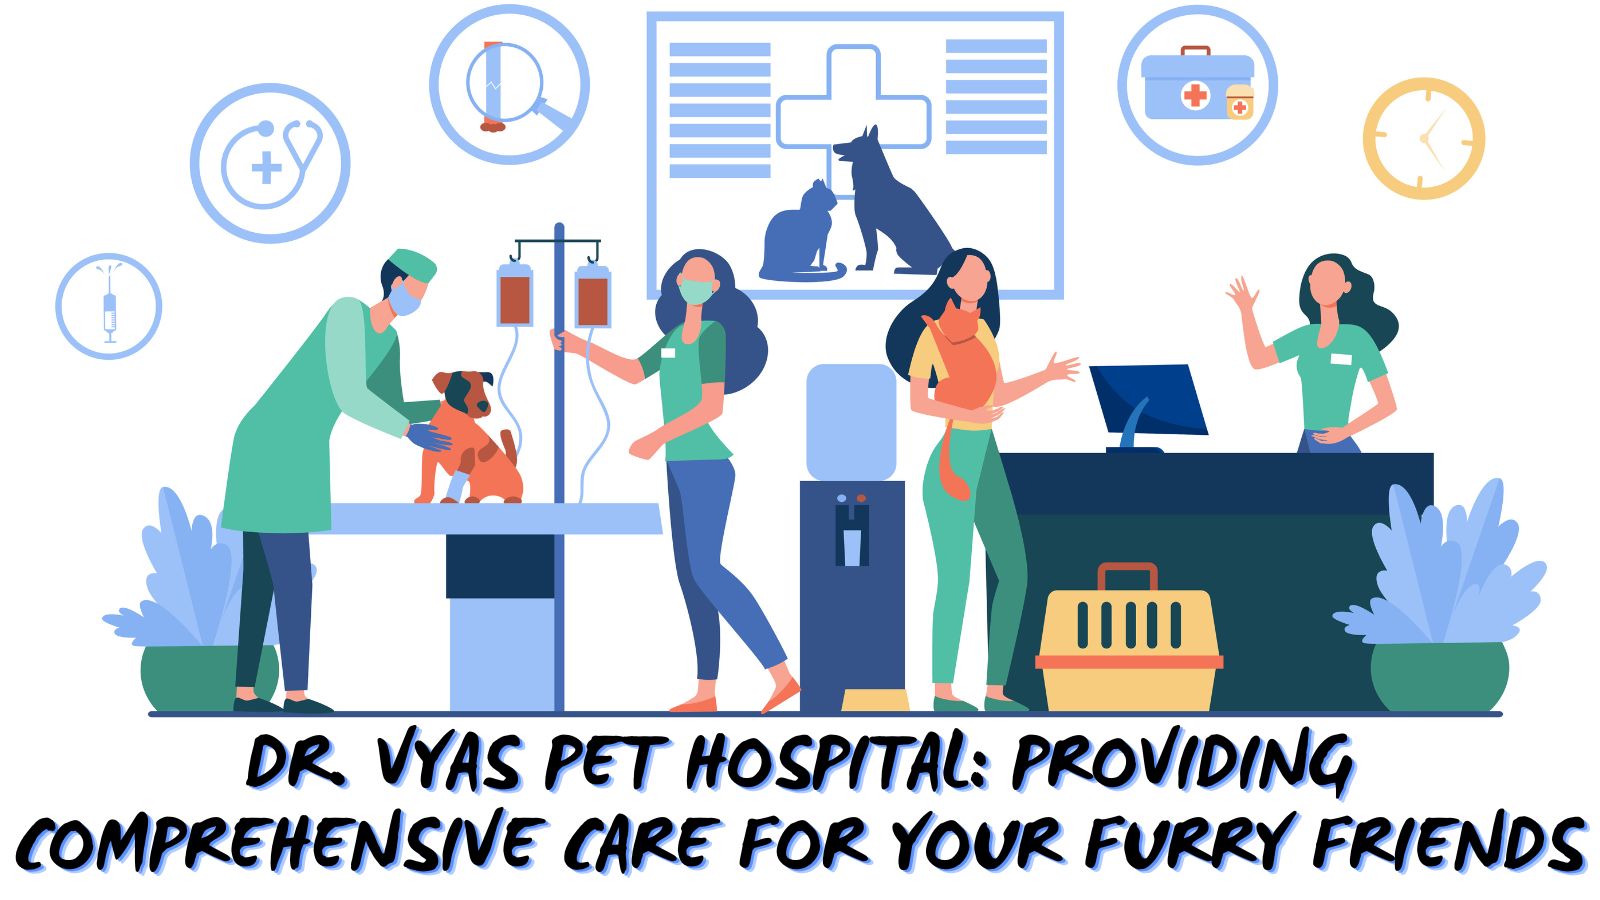 Dr. Vyas Pet Hospital Providing Comprehensive Care for Your Furry Friends